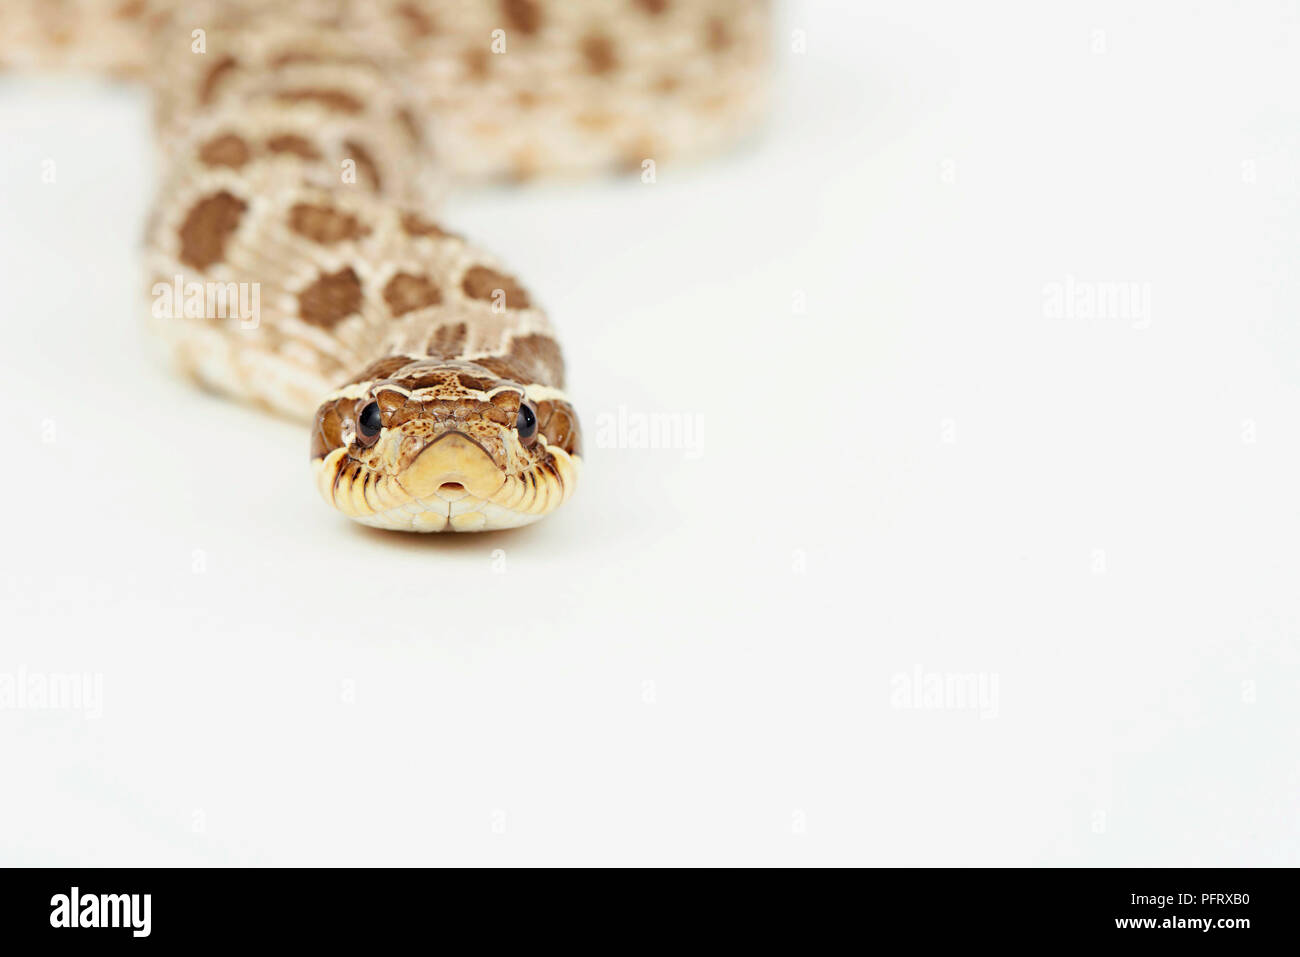 Plains hog-nosed snake (Heterodon nasicus) Stock Photo